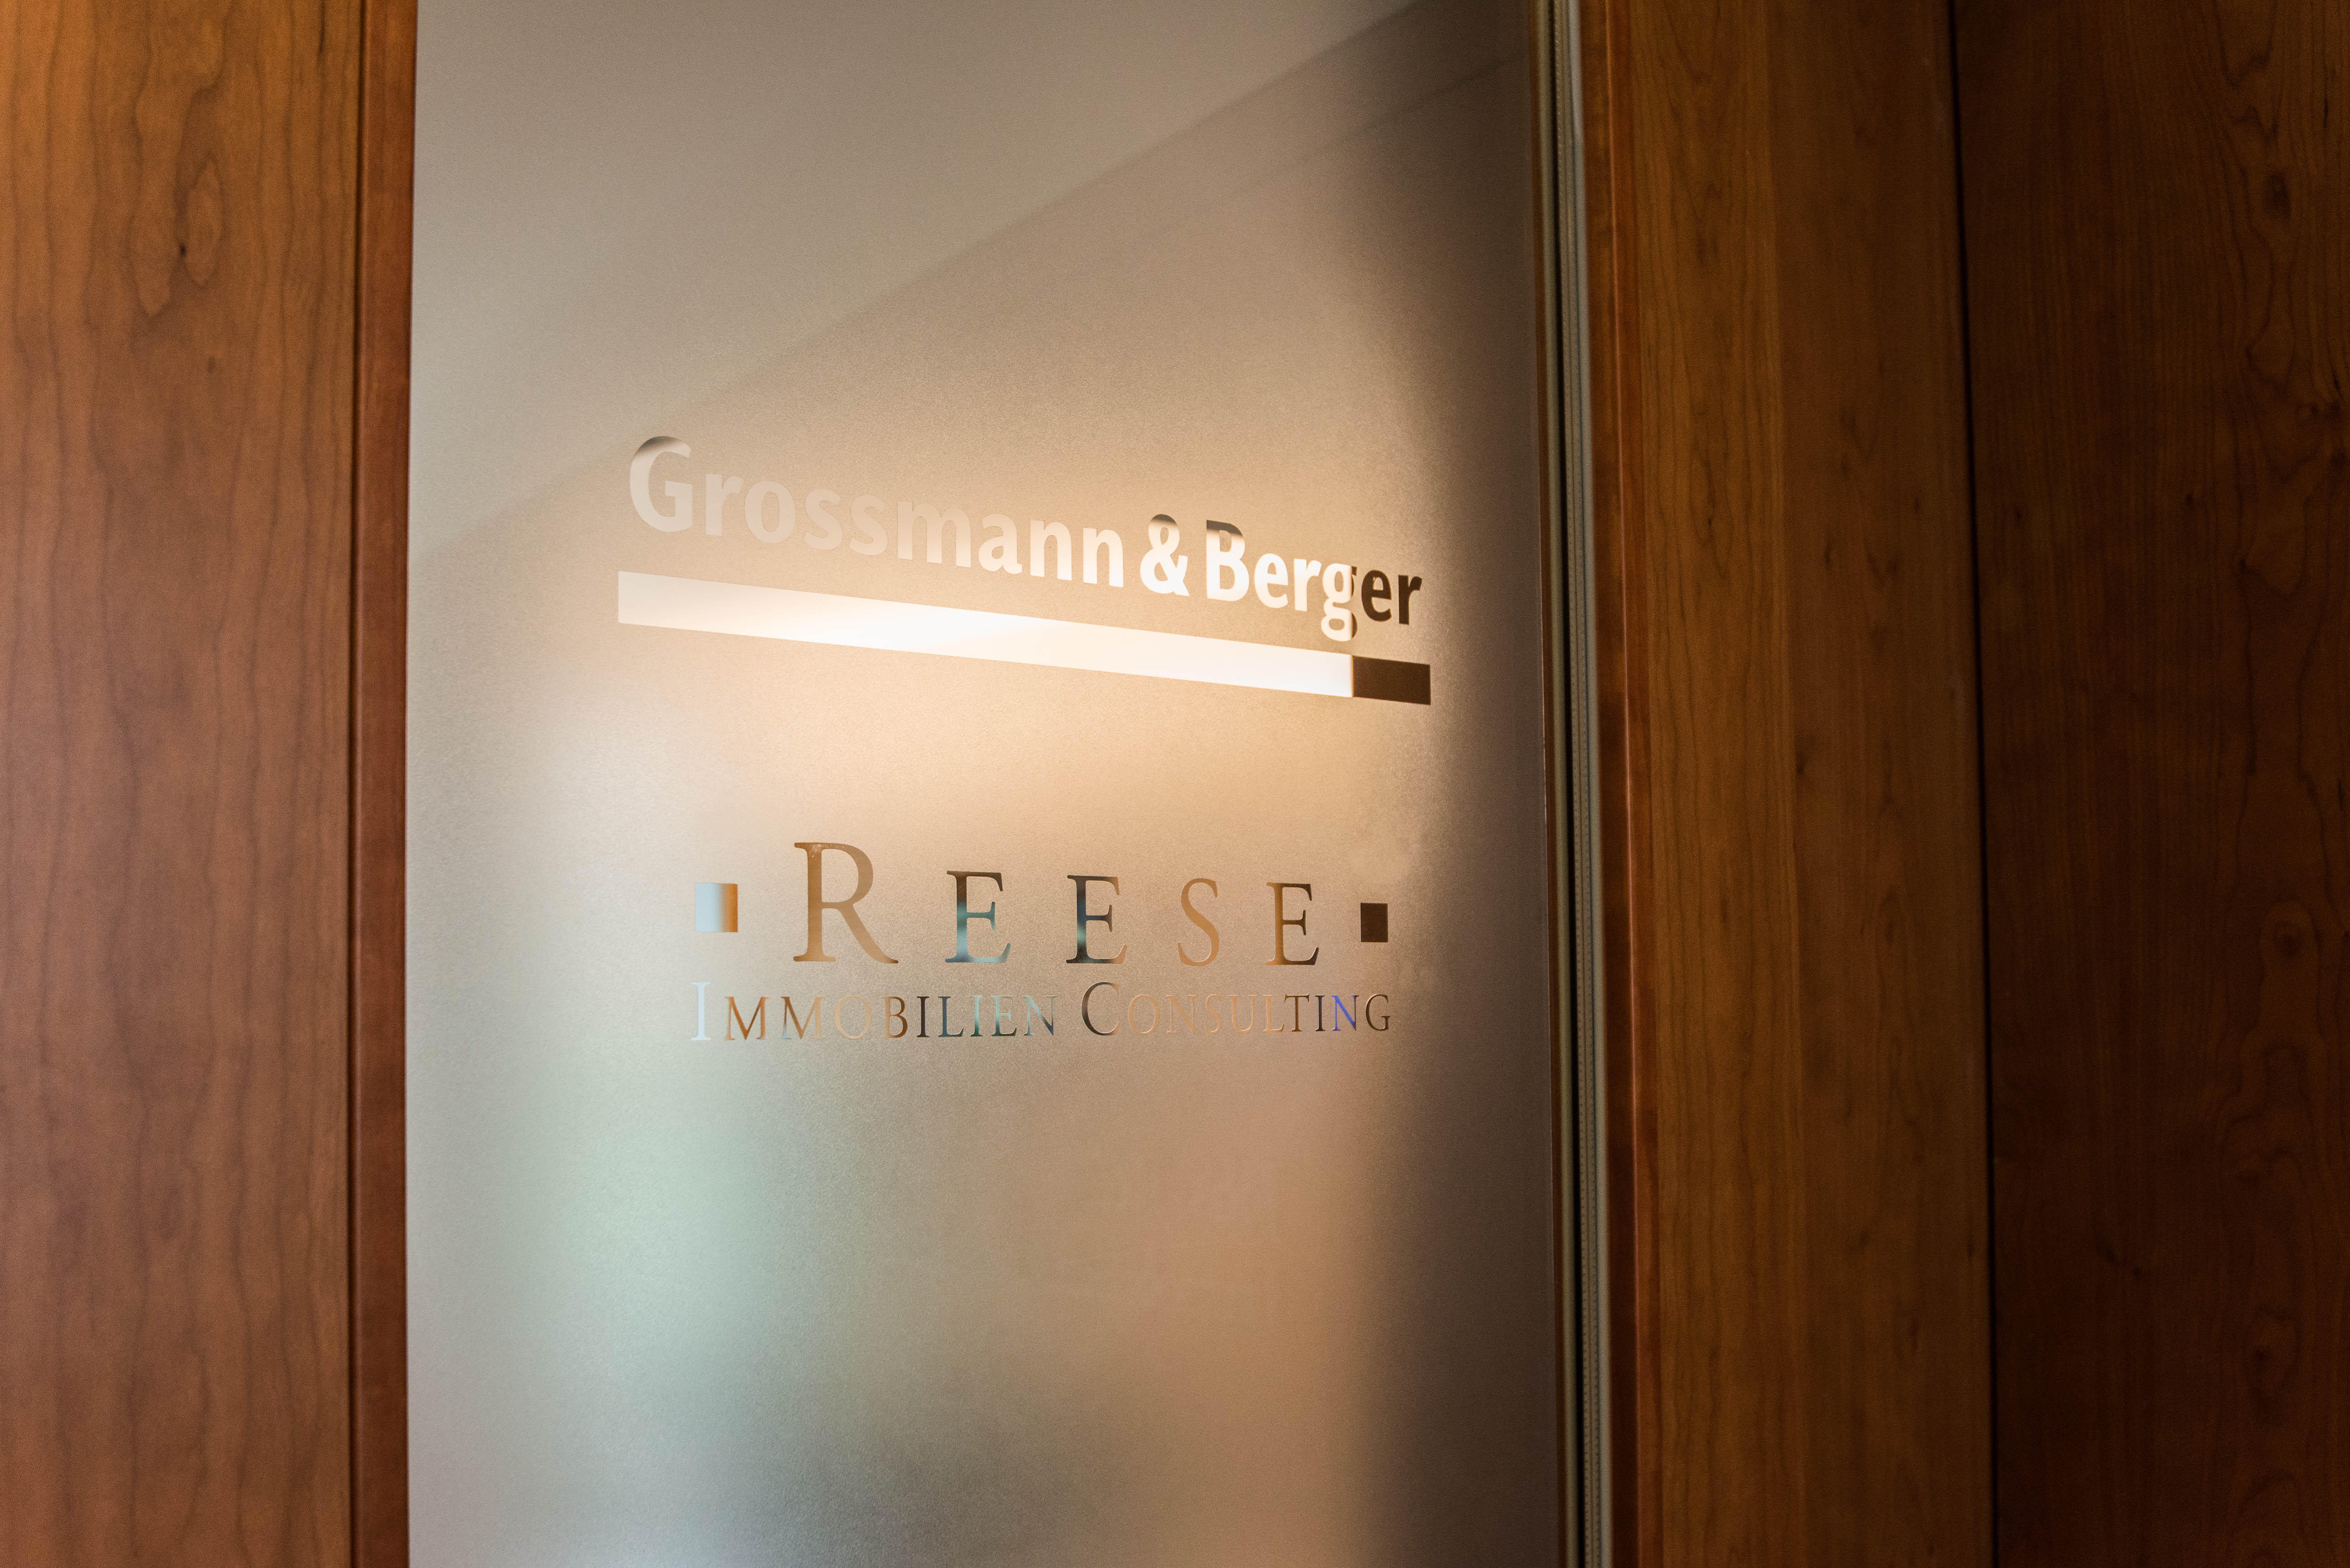 Grossmann & Berger GmbH Immobilien, Potsdamer Platz 9 in Berlin